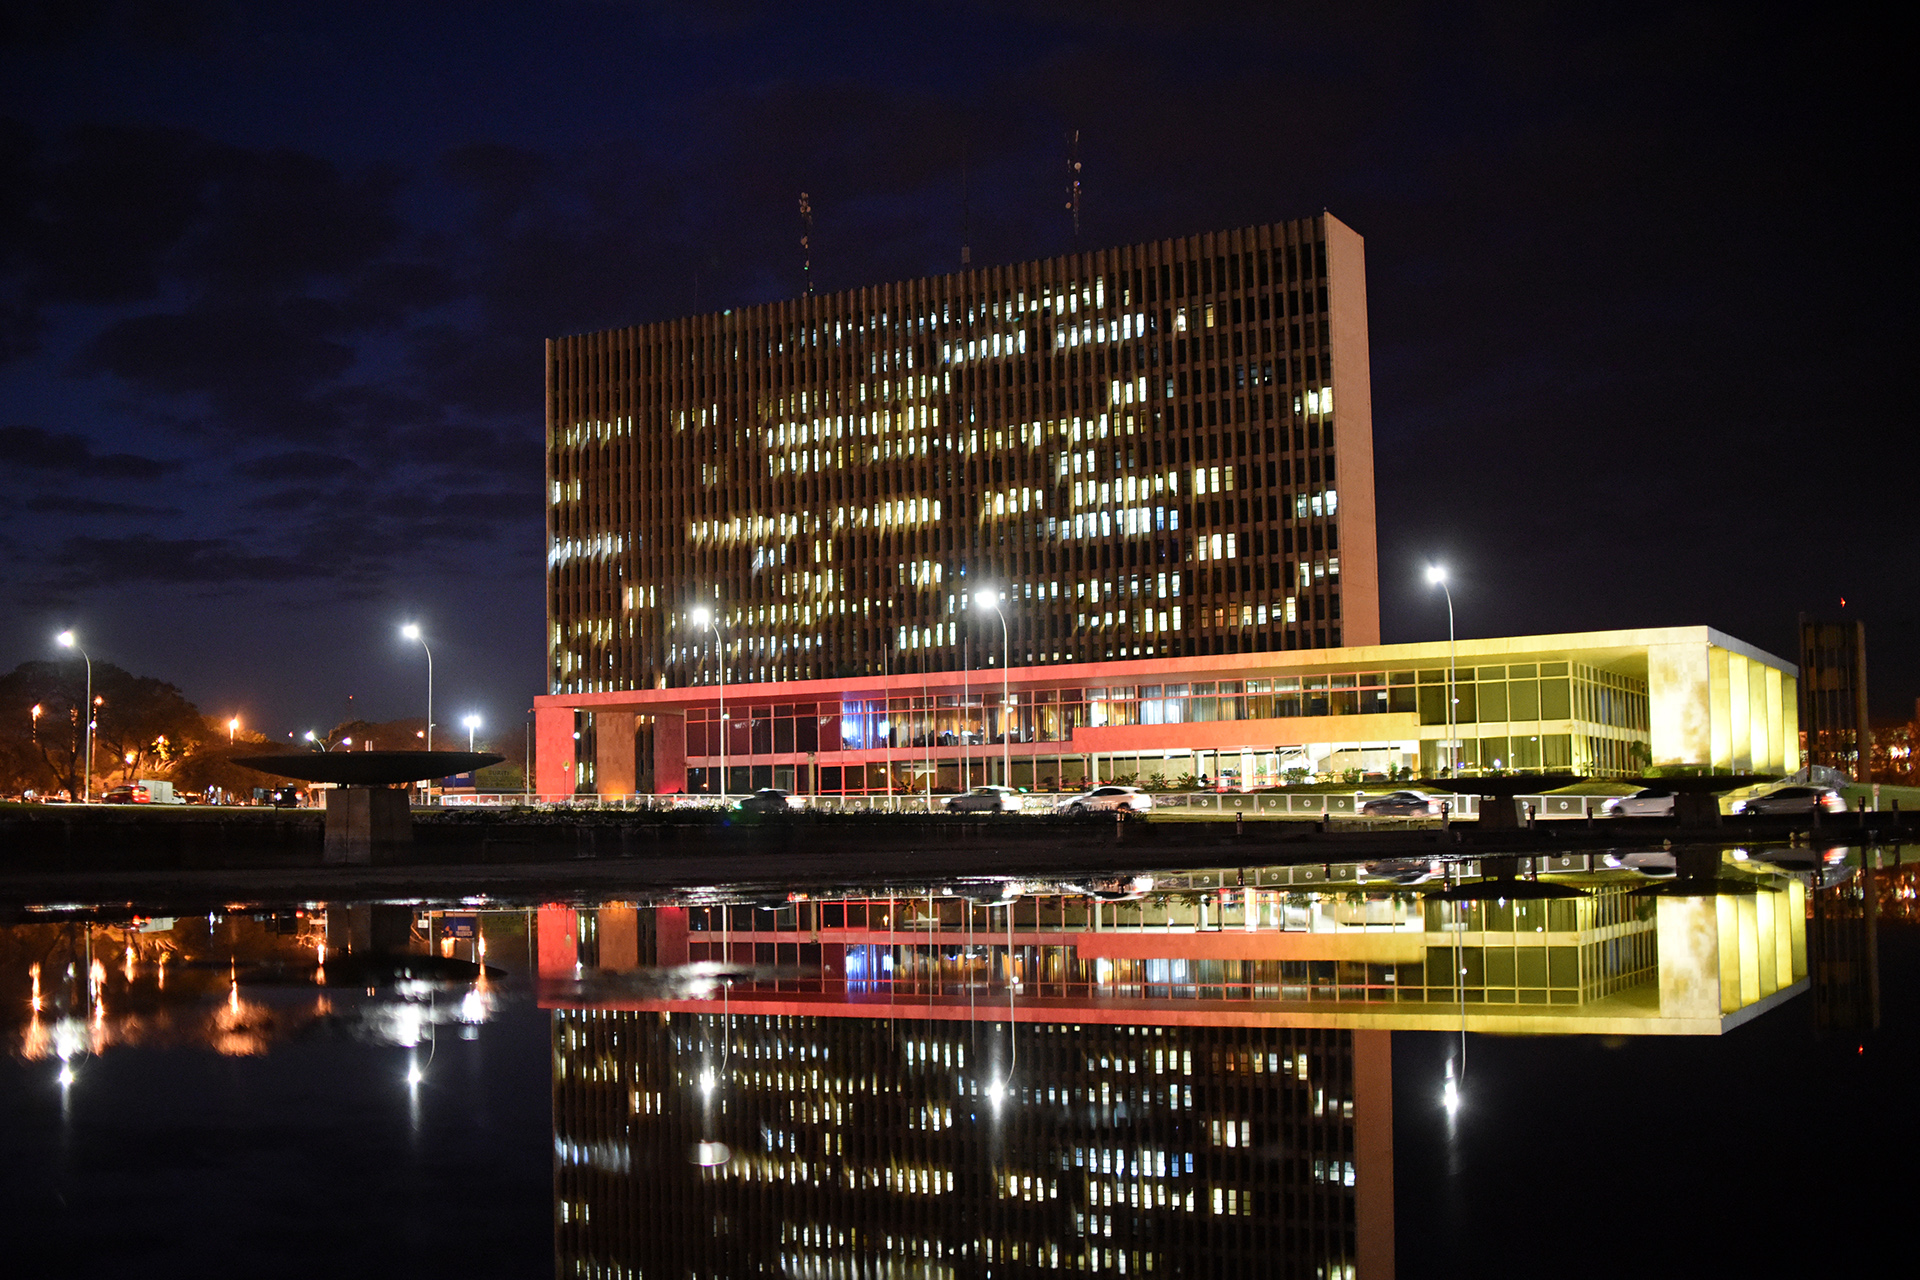 Iluminação em vermelho e amarelo deverá ficar no palácio até domingo (20). Brasília tem relações culturais com o país ibérico